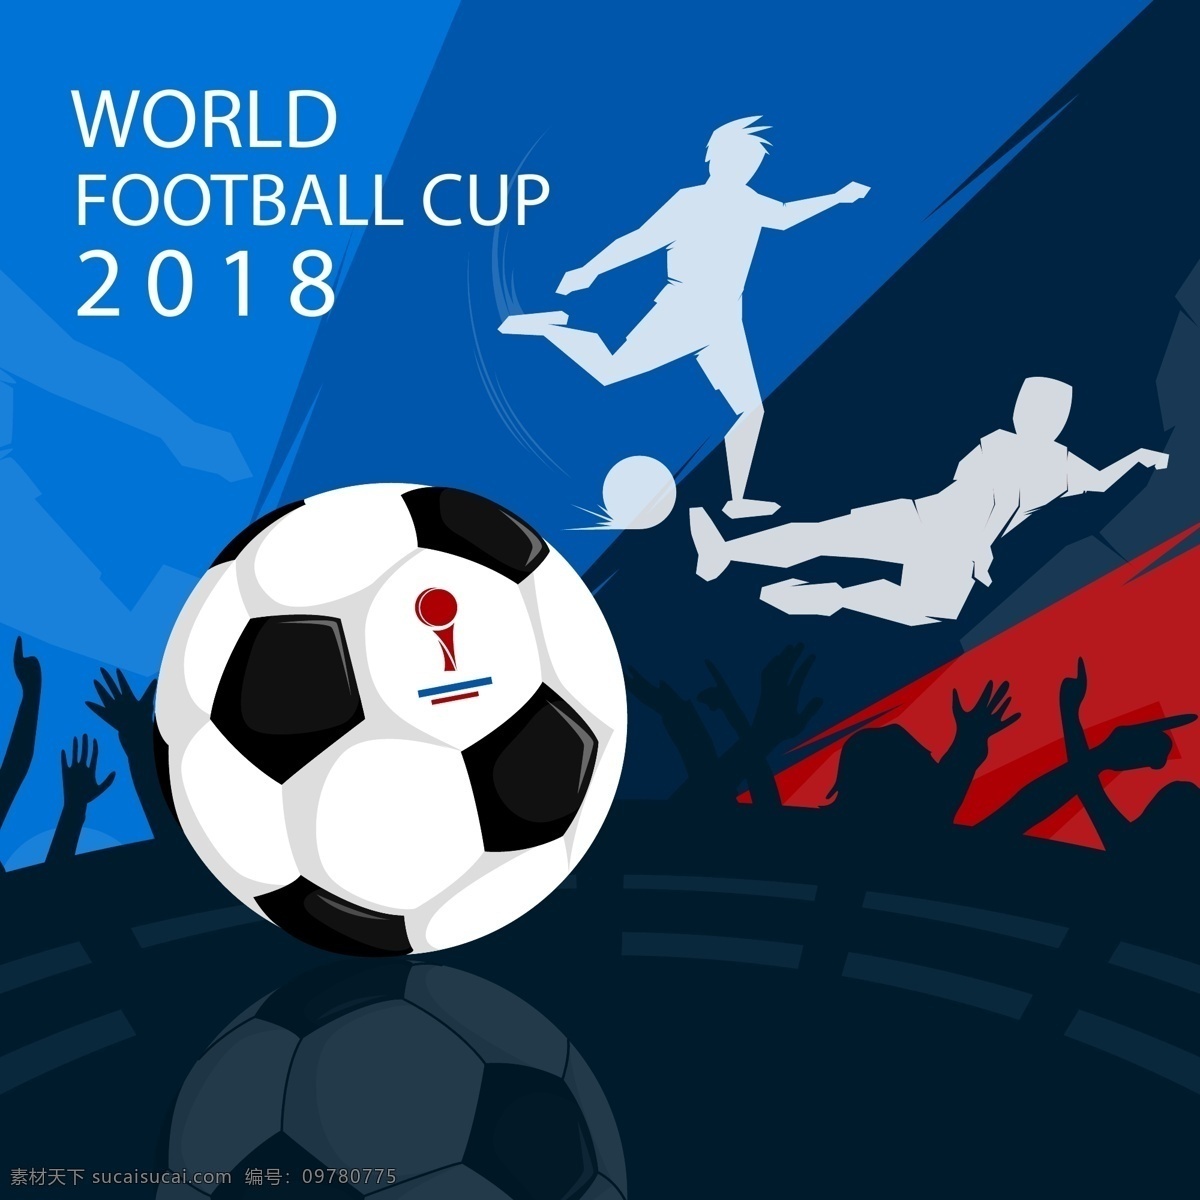 蓝色 背景 黑白 足球 世界杯 元素 体育 运动 健身 体育赛事 足球赛 黑白足球 世界杯足球赛 2018 足球比赛